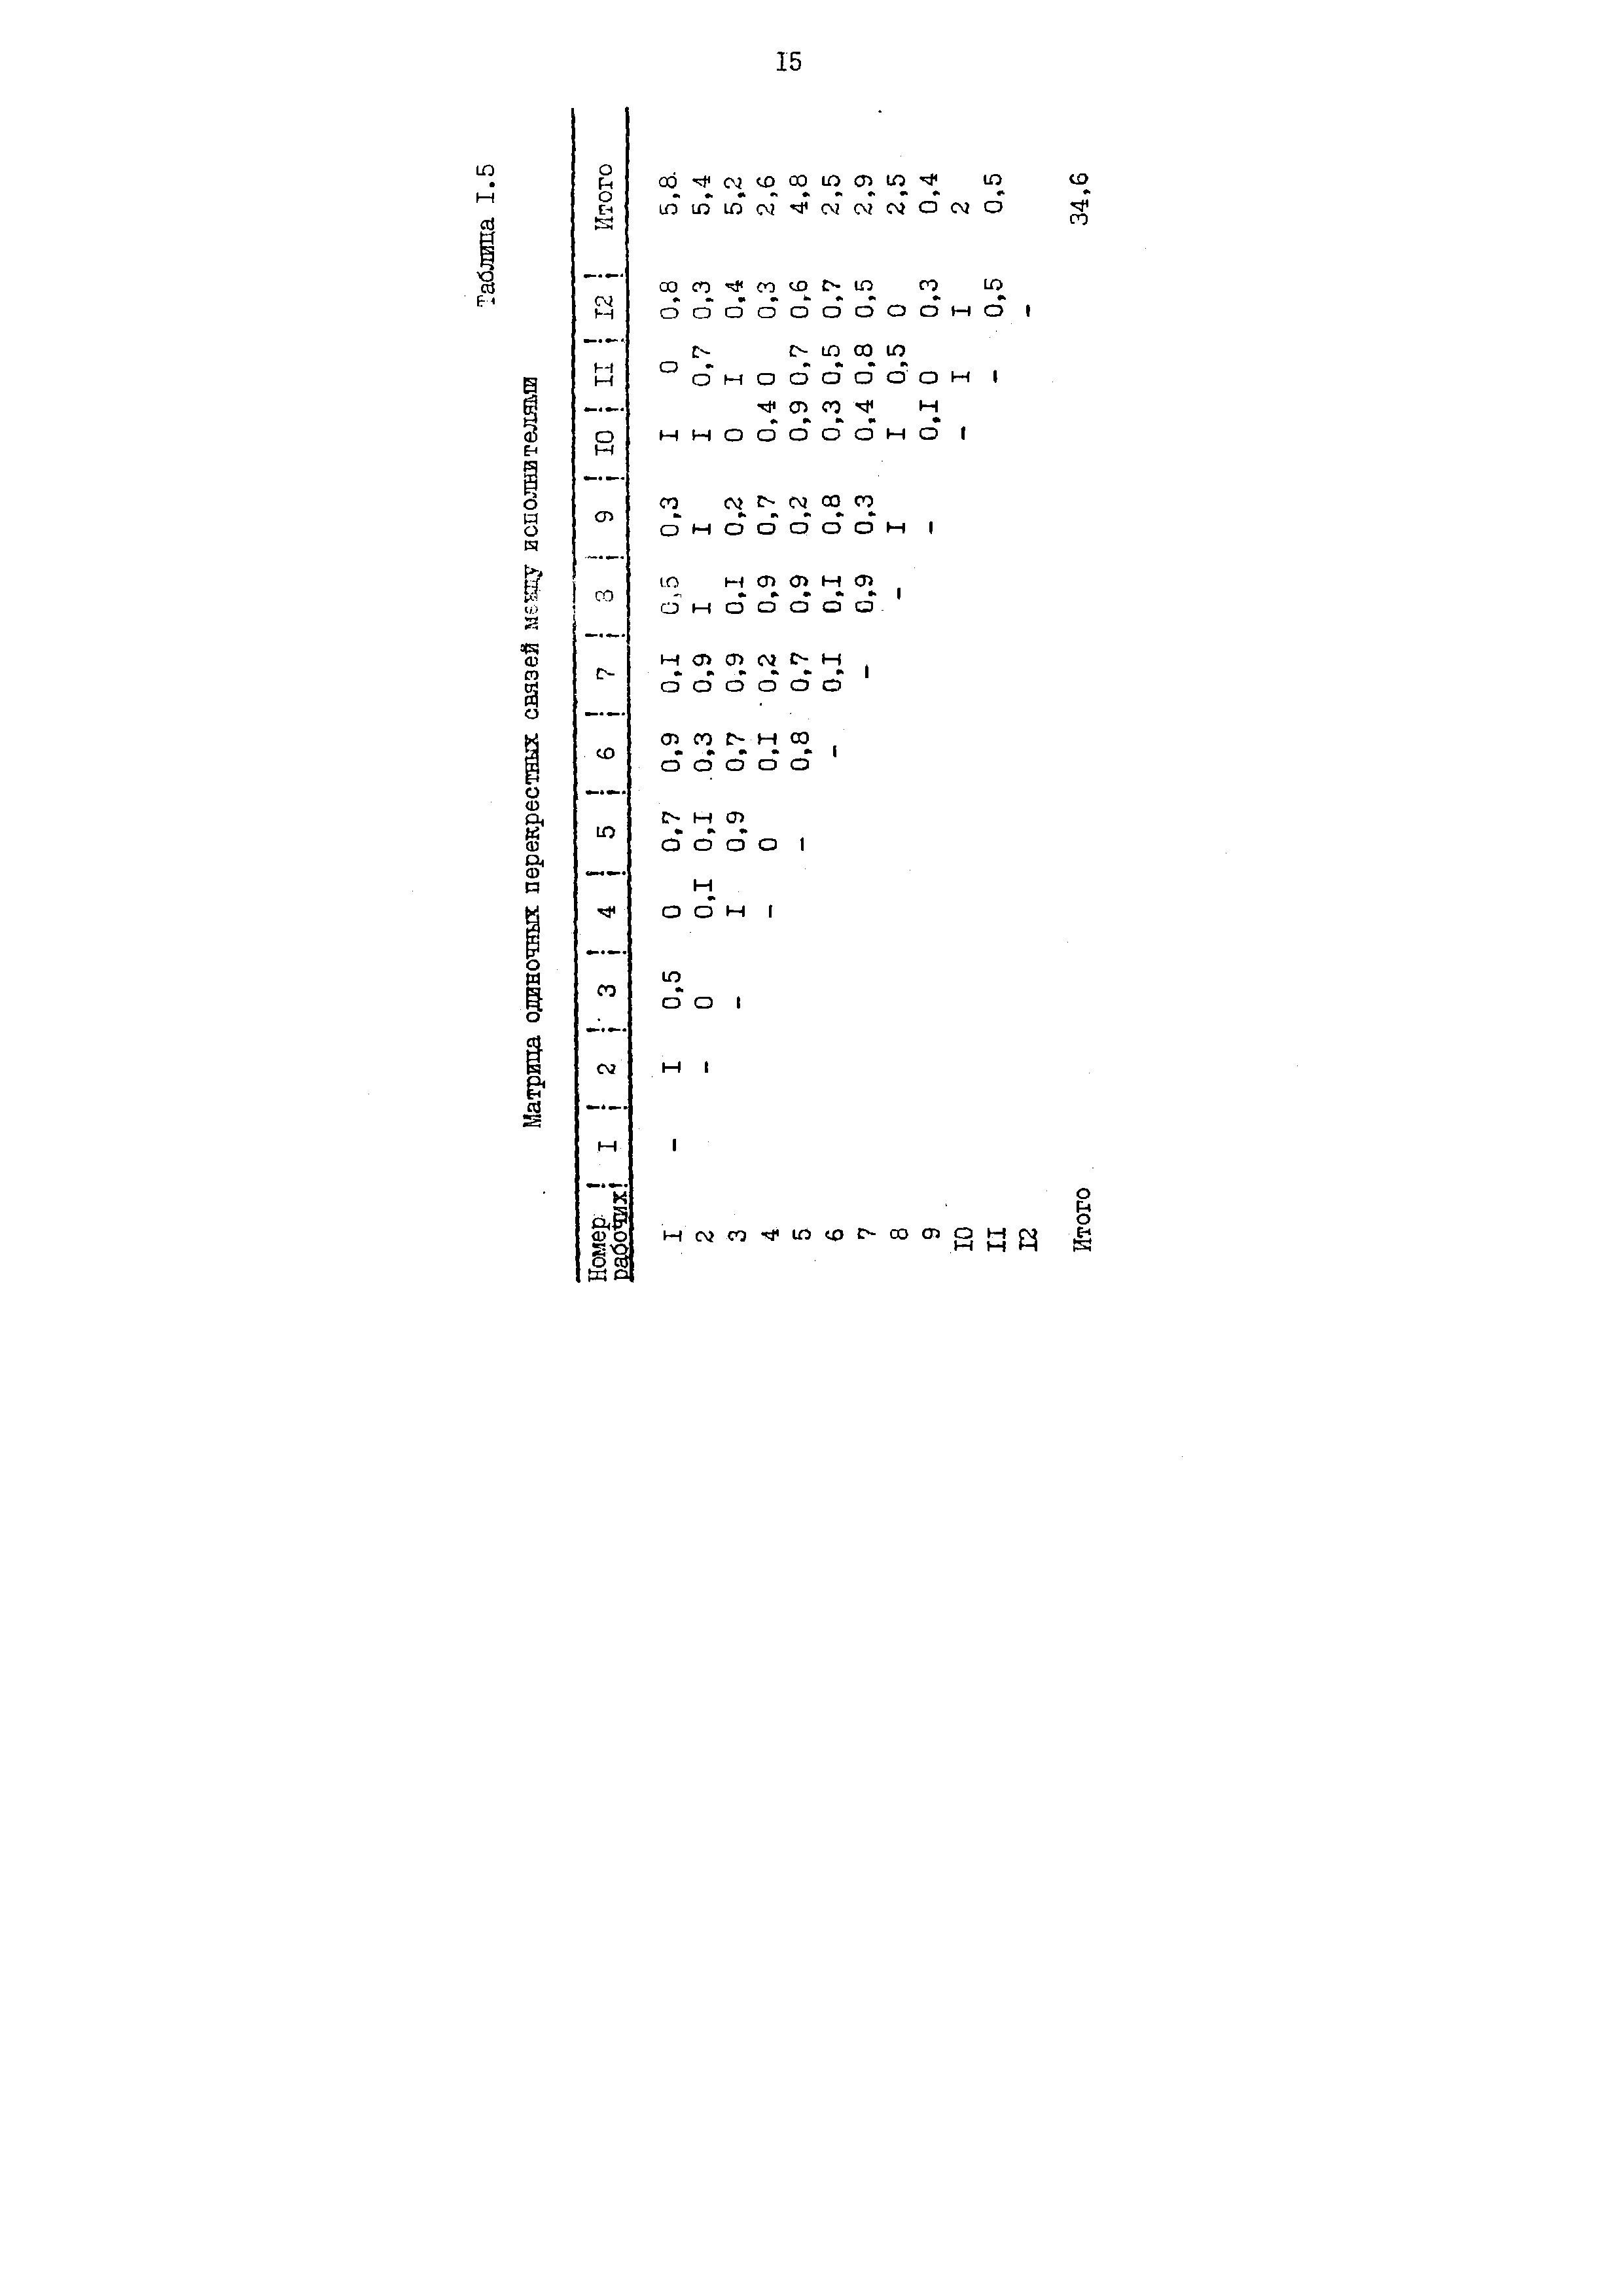 Таблица 1.5 Матрица одиночных перекрестных связей мгкду исполнителями
